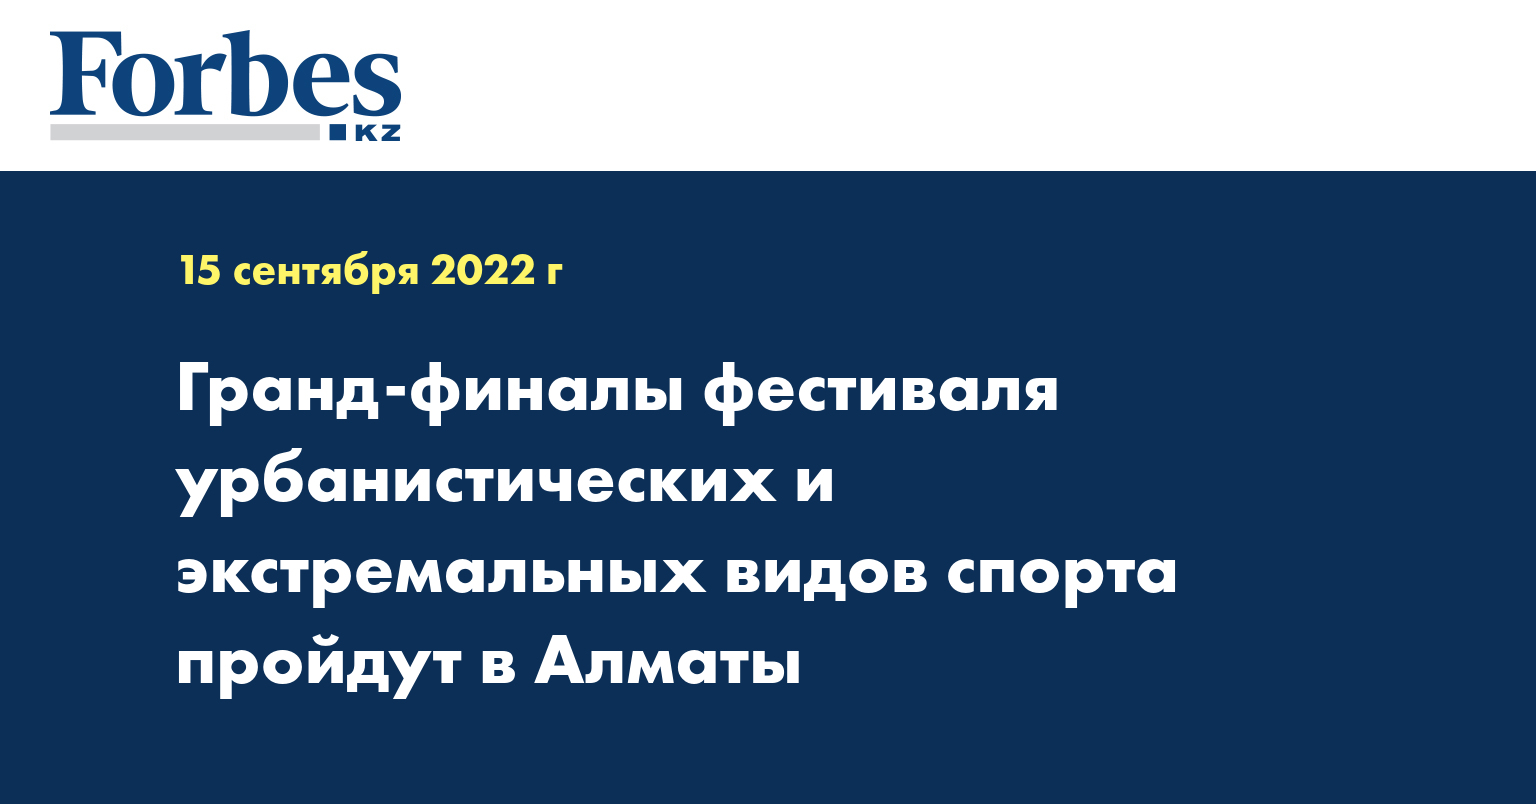 Гранд-финалы фестиваля урбанистических и экстремальных видов спорта пройдут в Алматы